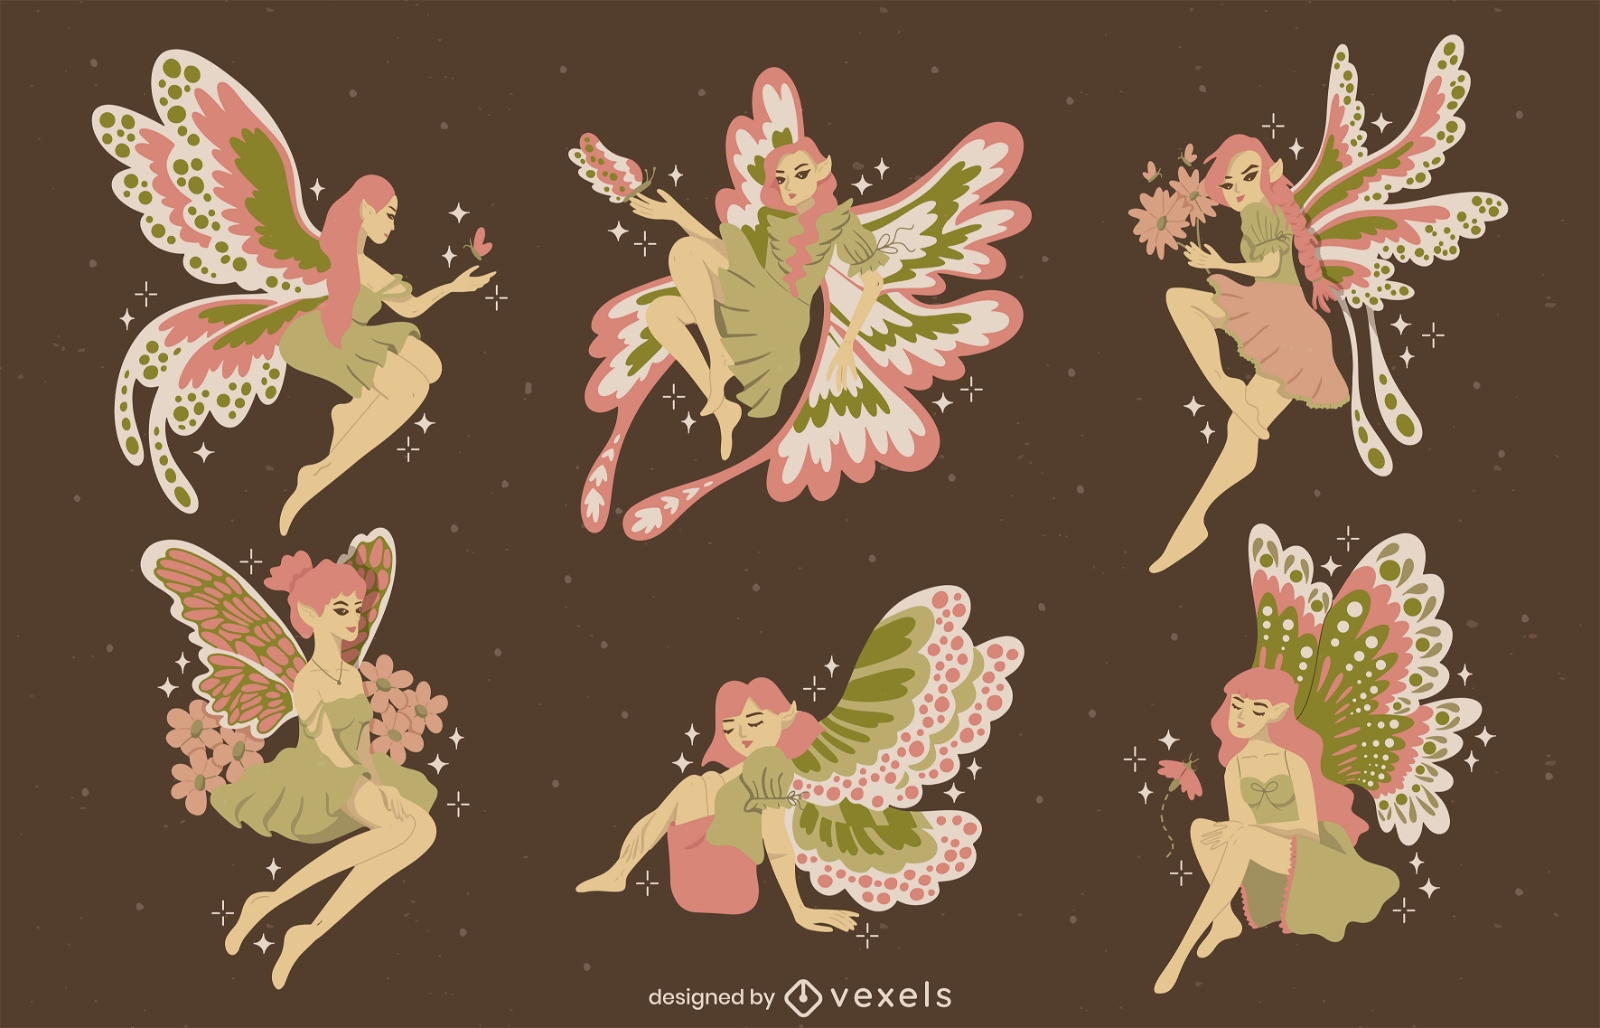 Magical fairy fantasy creatures set